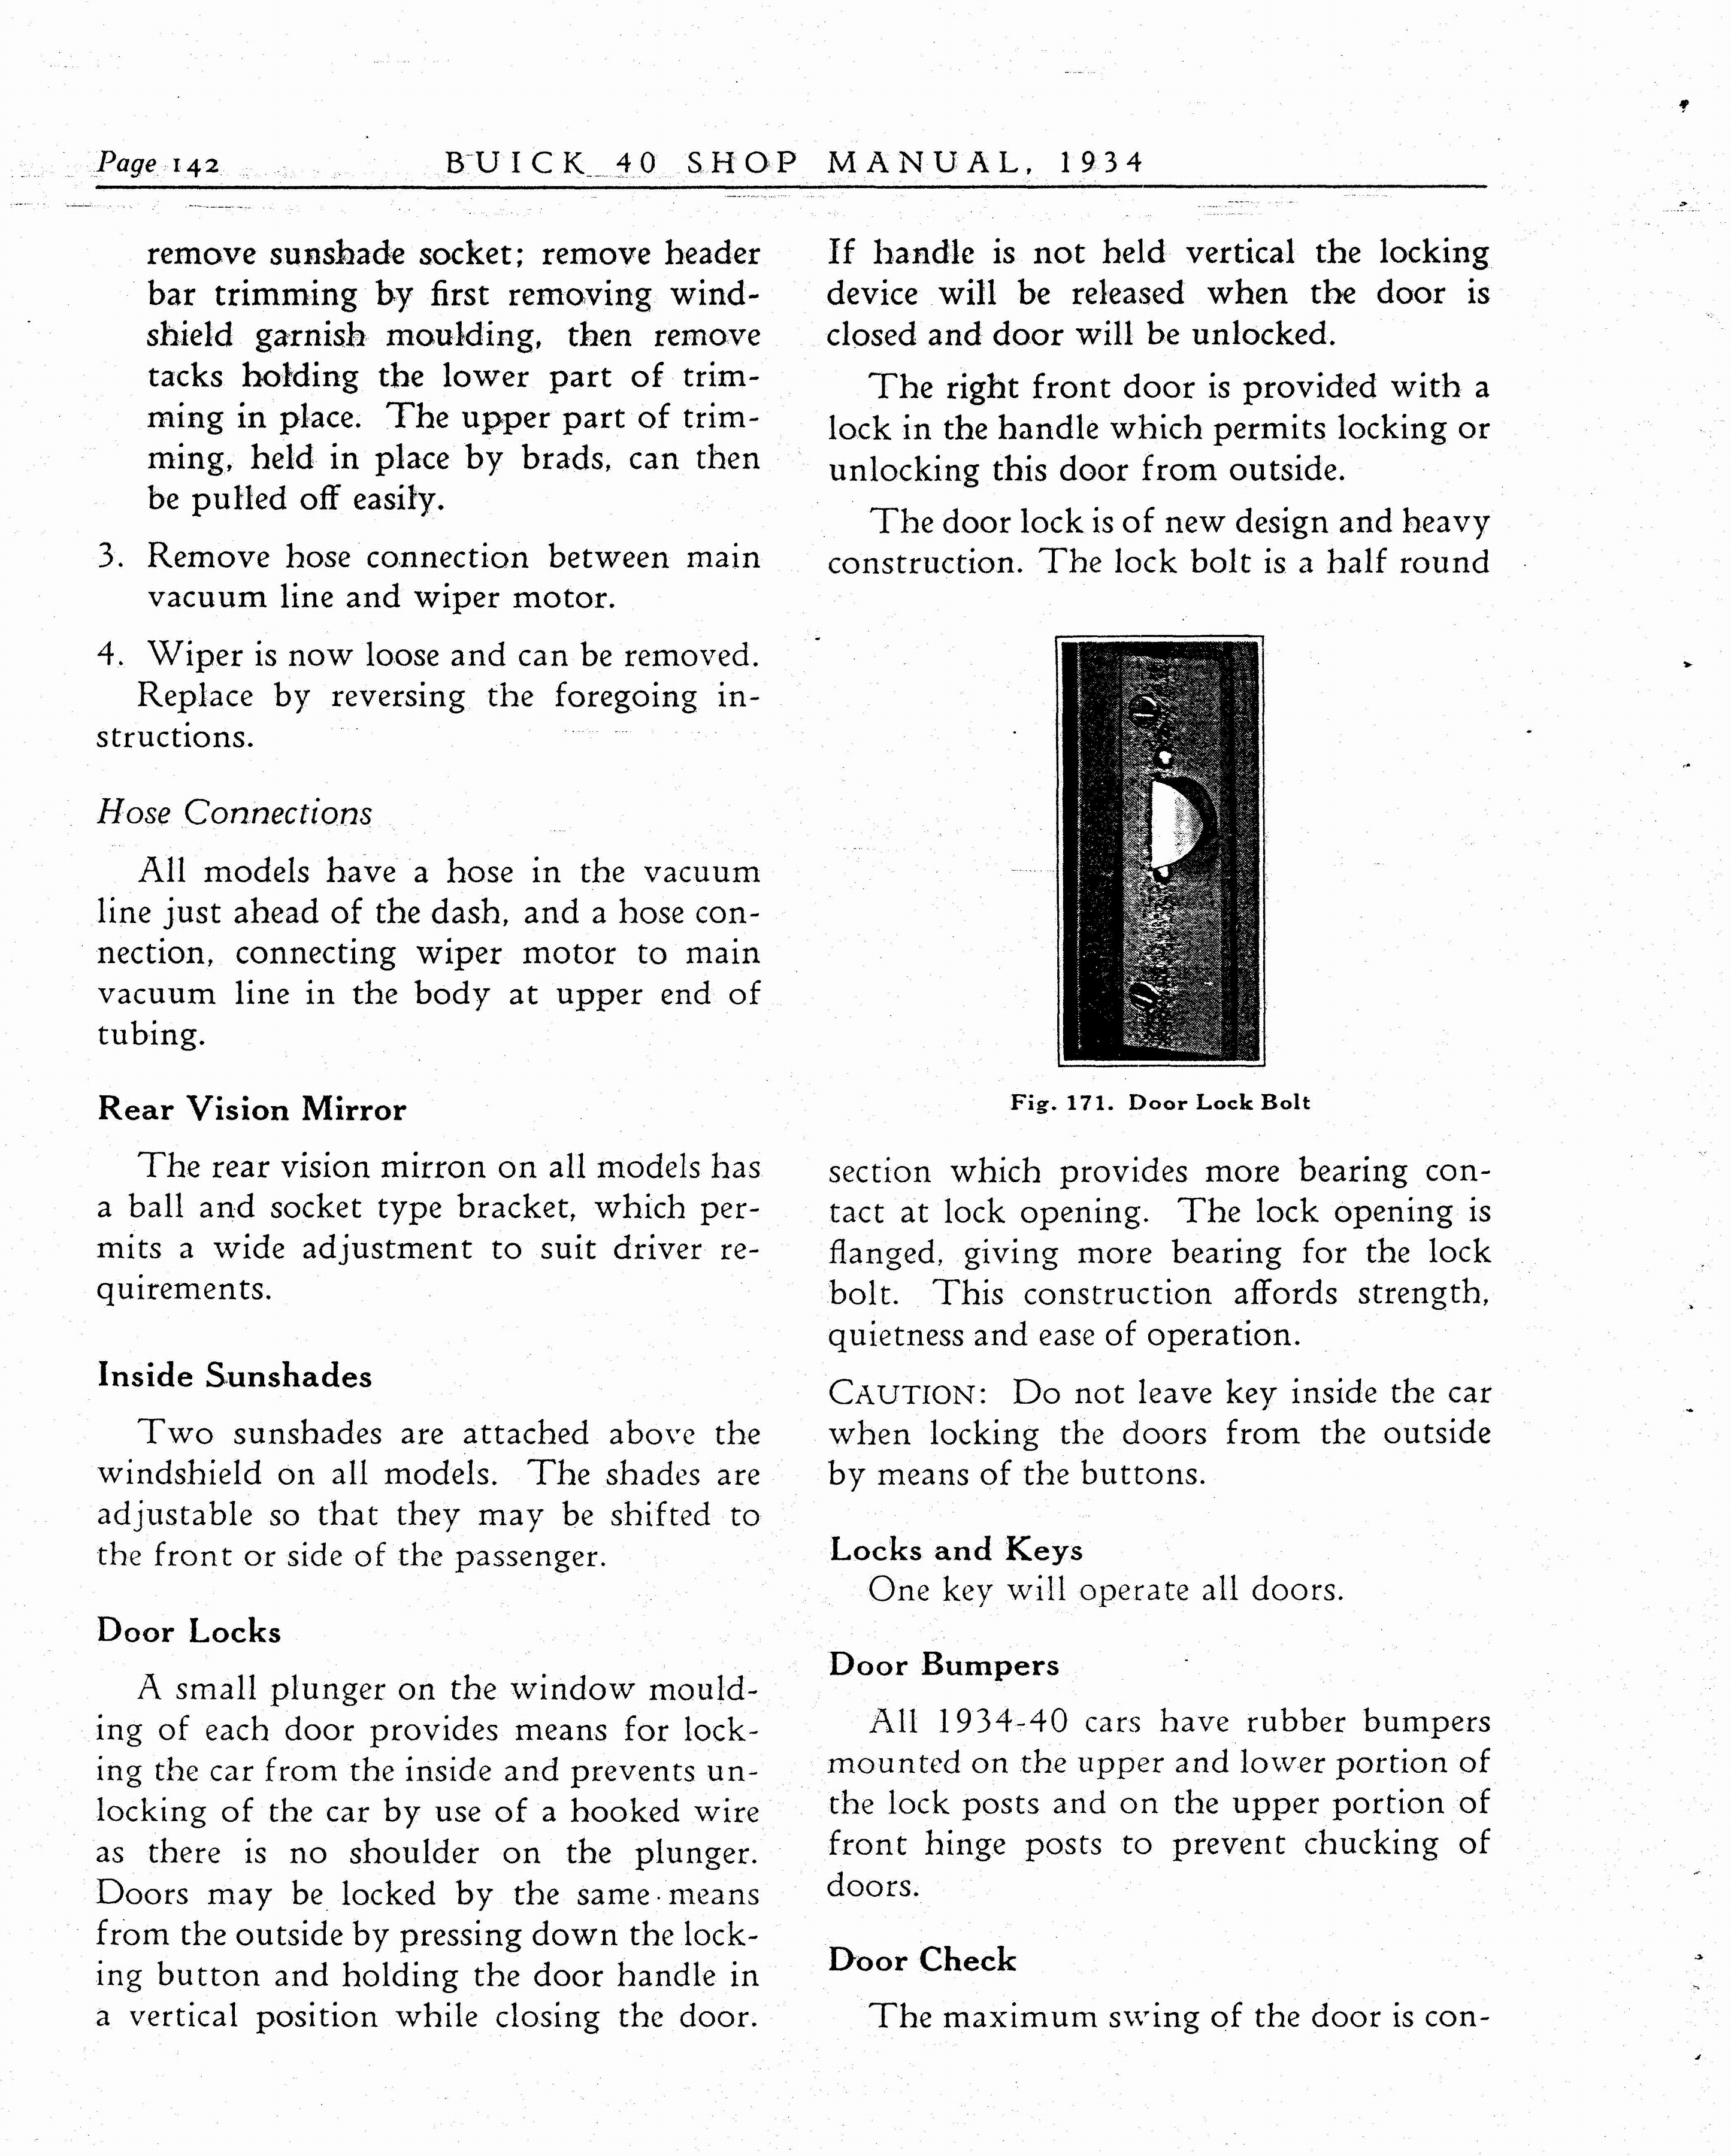 n_1934 Buick Series 40 Shop Manual_Page_143.jpg